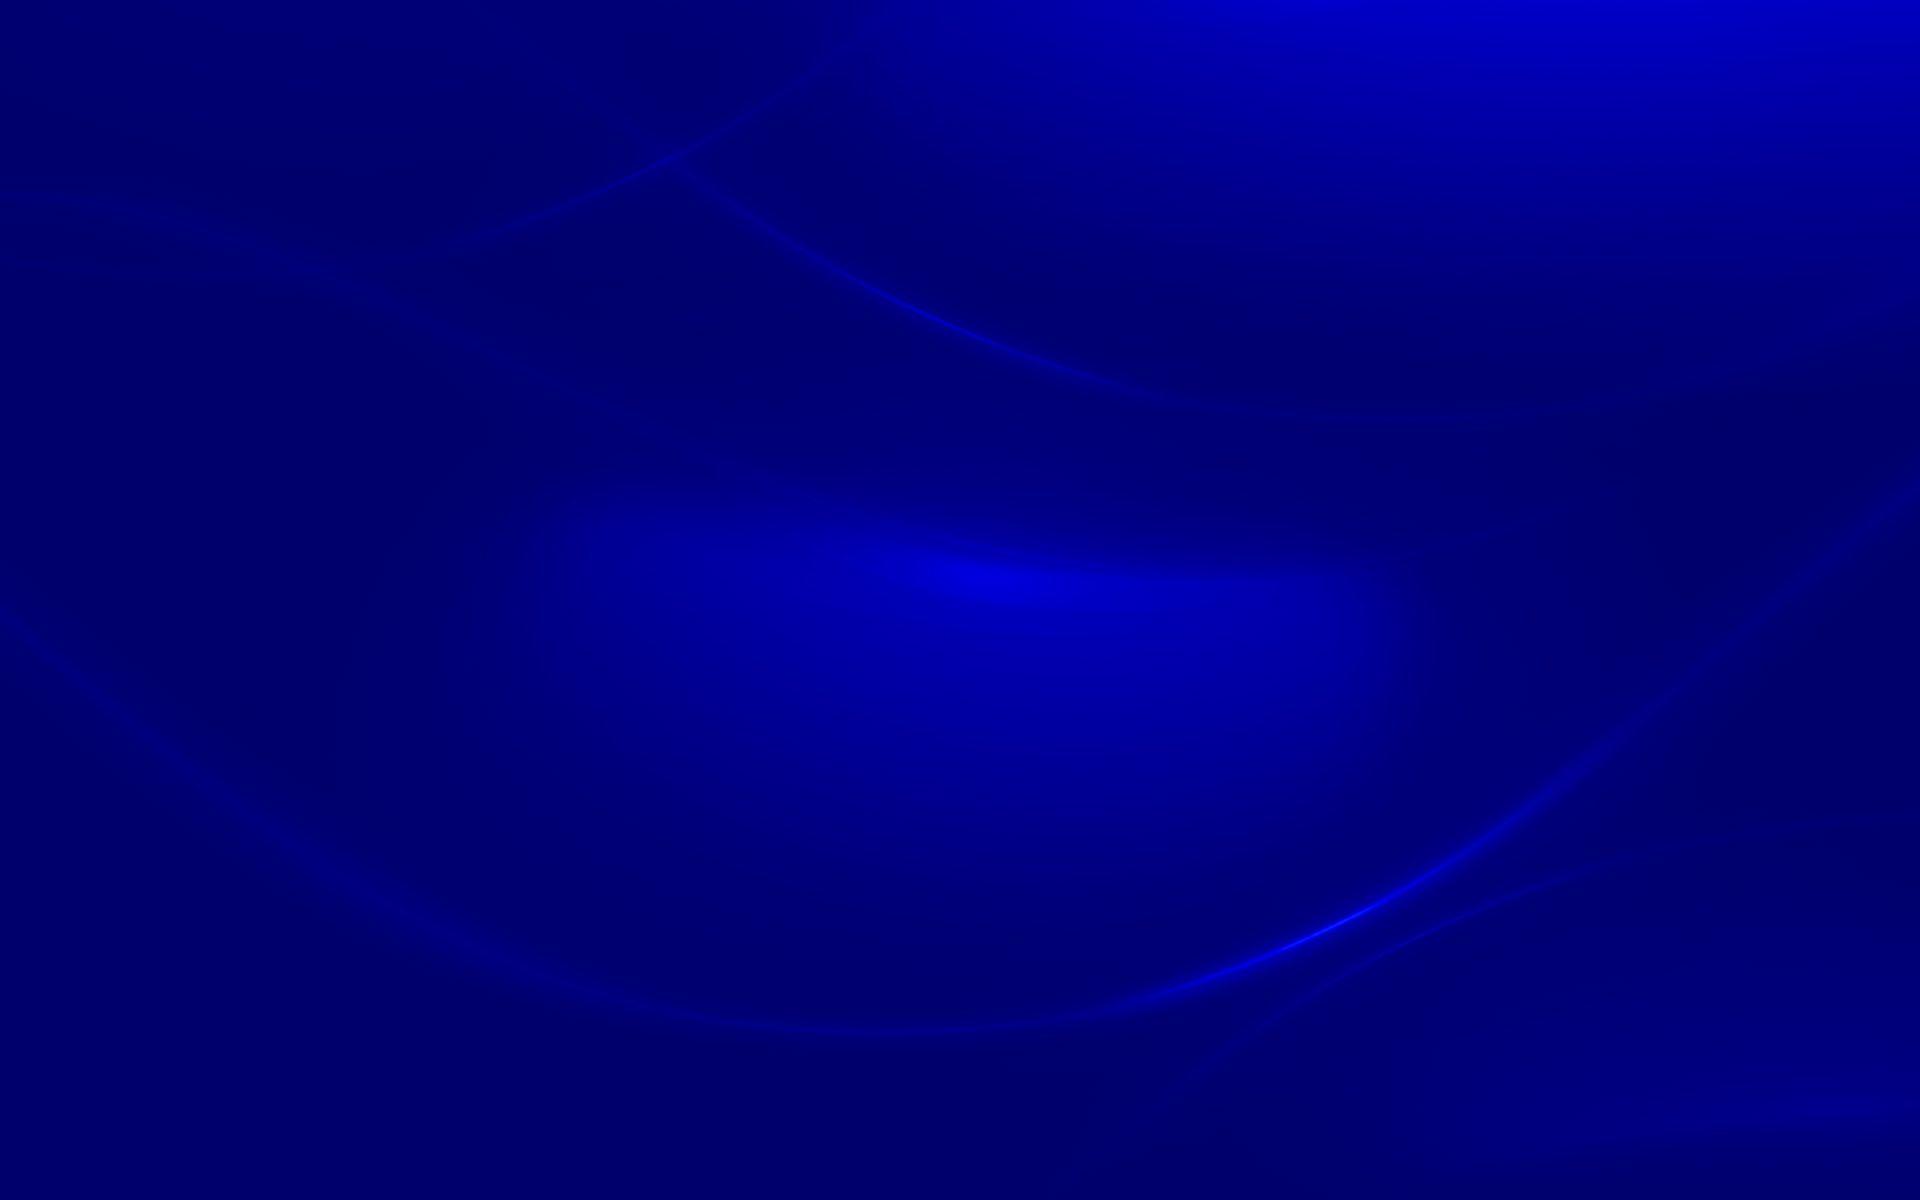 Windows 7 Wallpaper Blue wallpaper